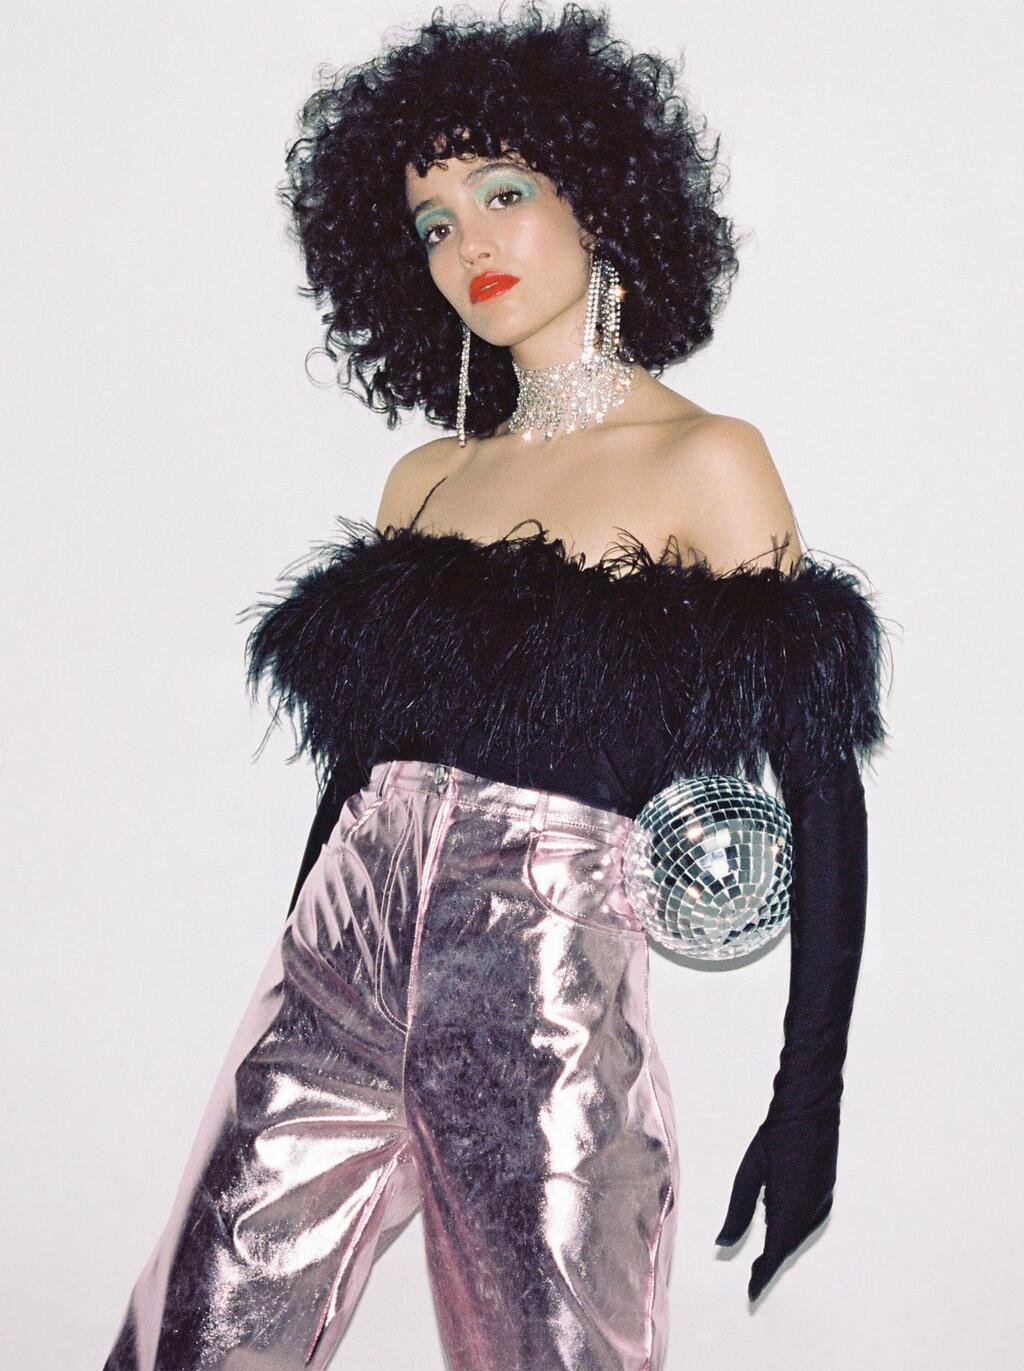 ליהי טולדנו מצטלמת להפקת אופנה בסגנון שנות ה-80